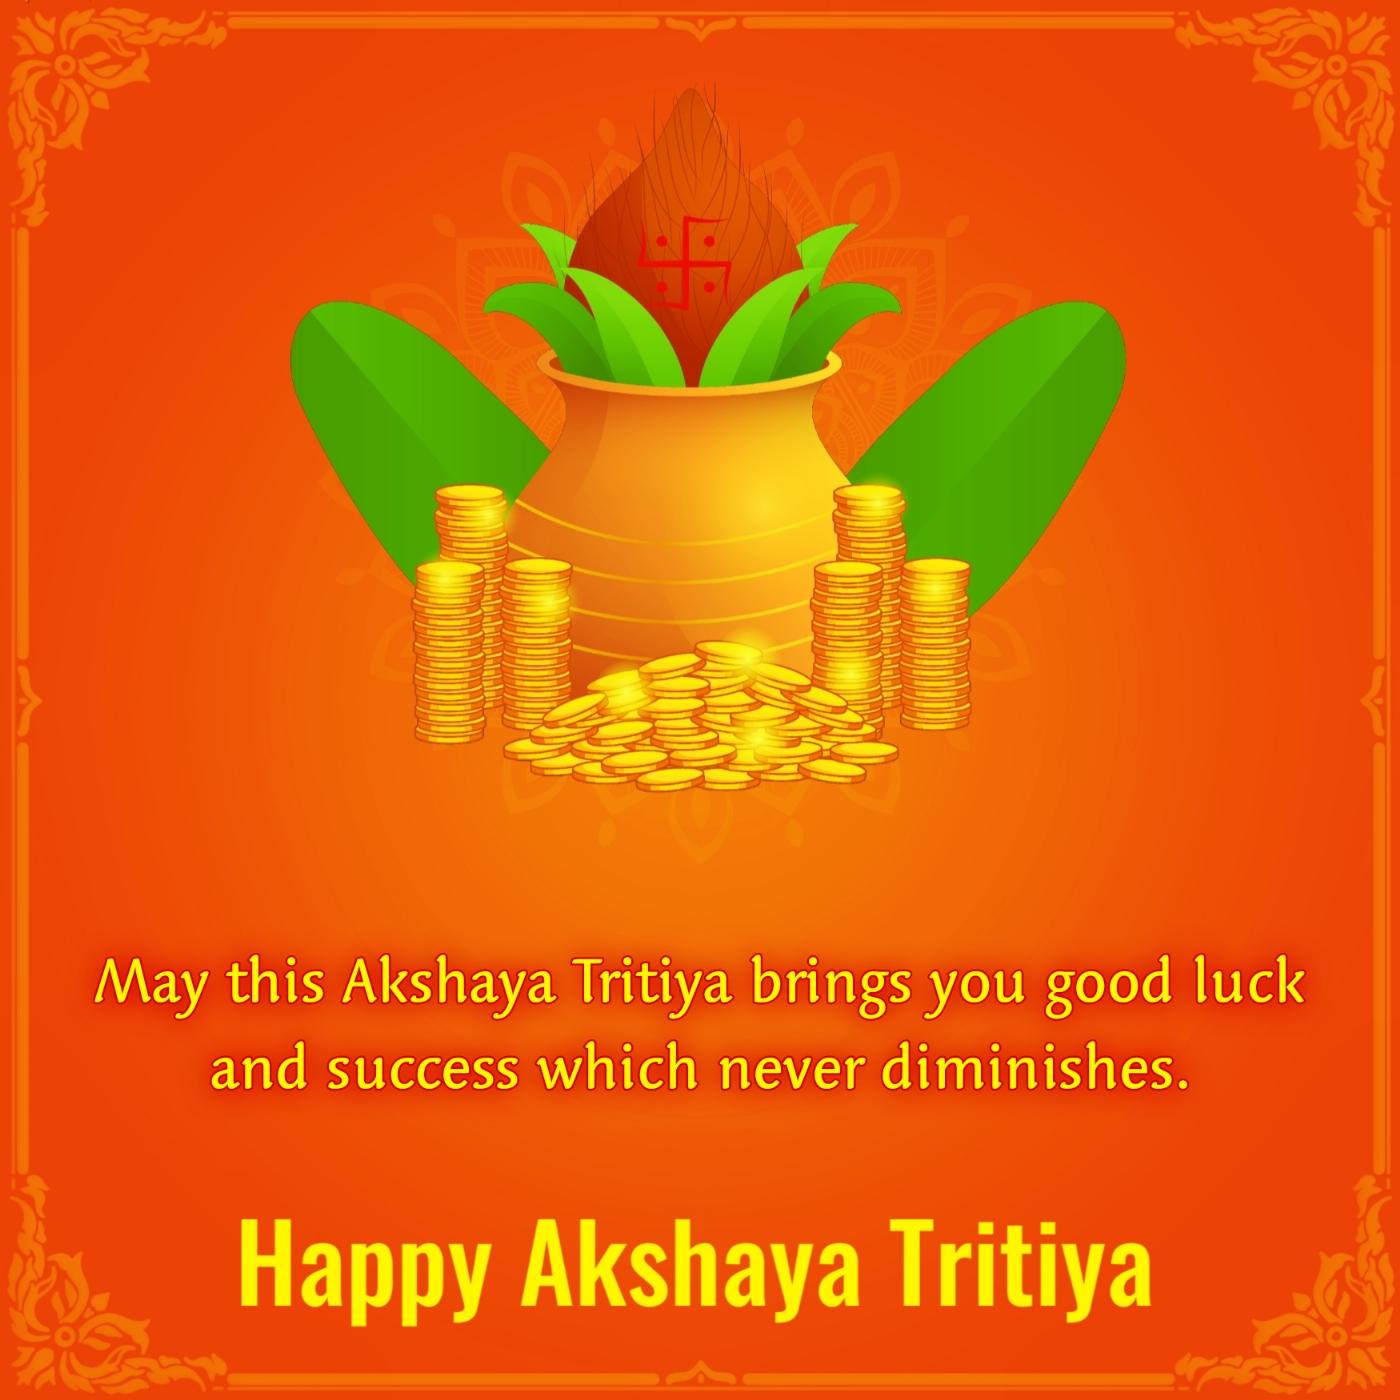 May this Akshaya Tritiya brings you good luck and success